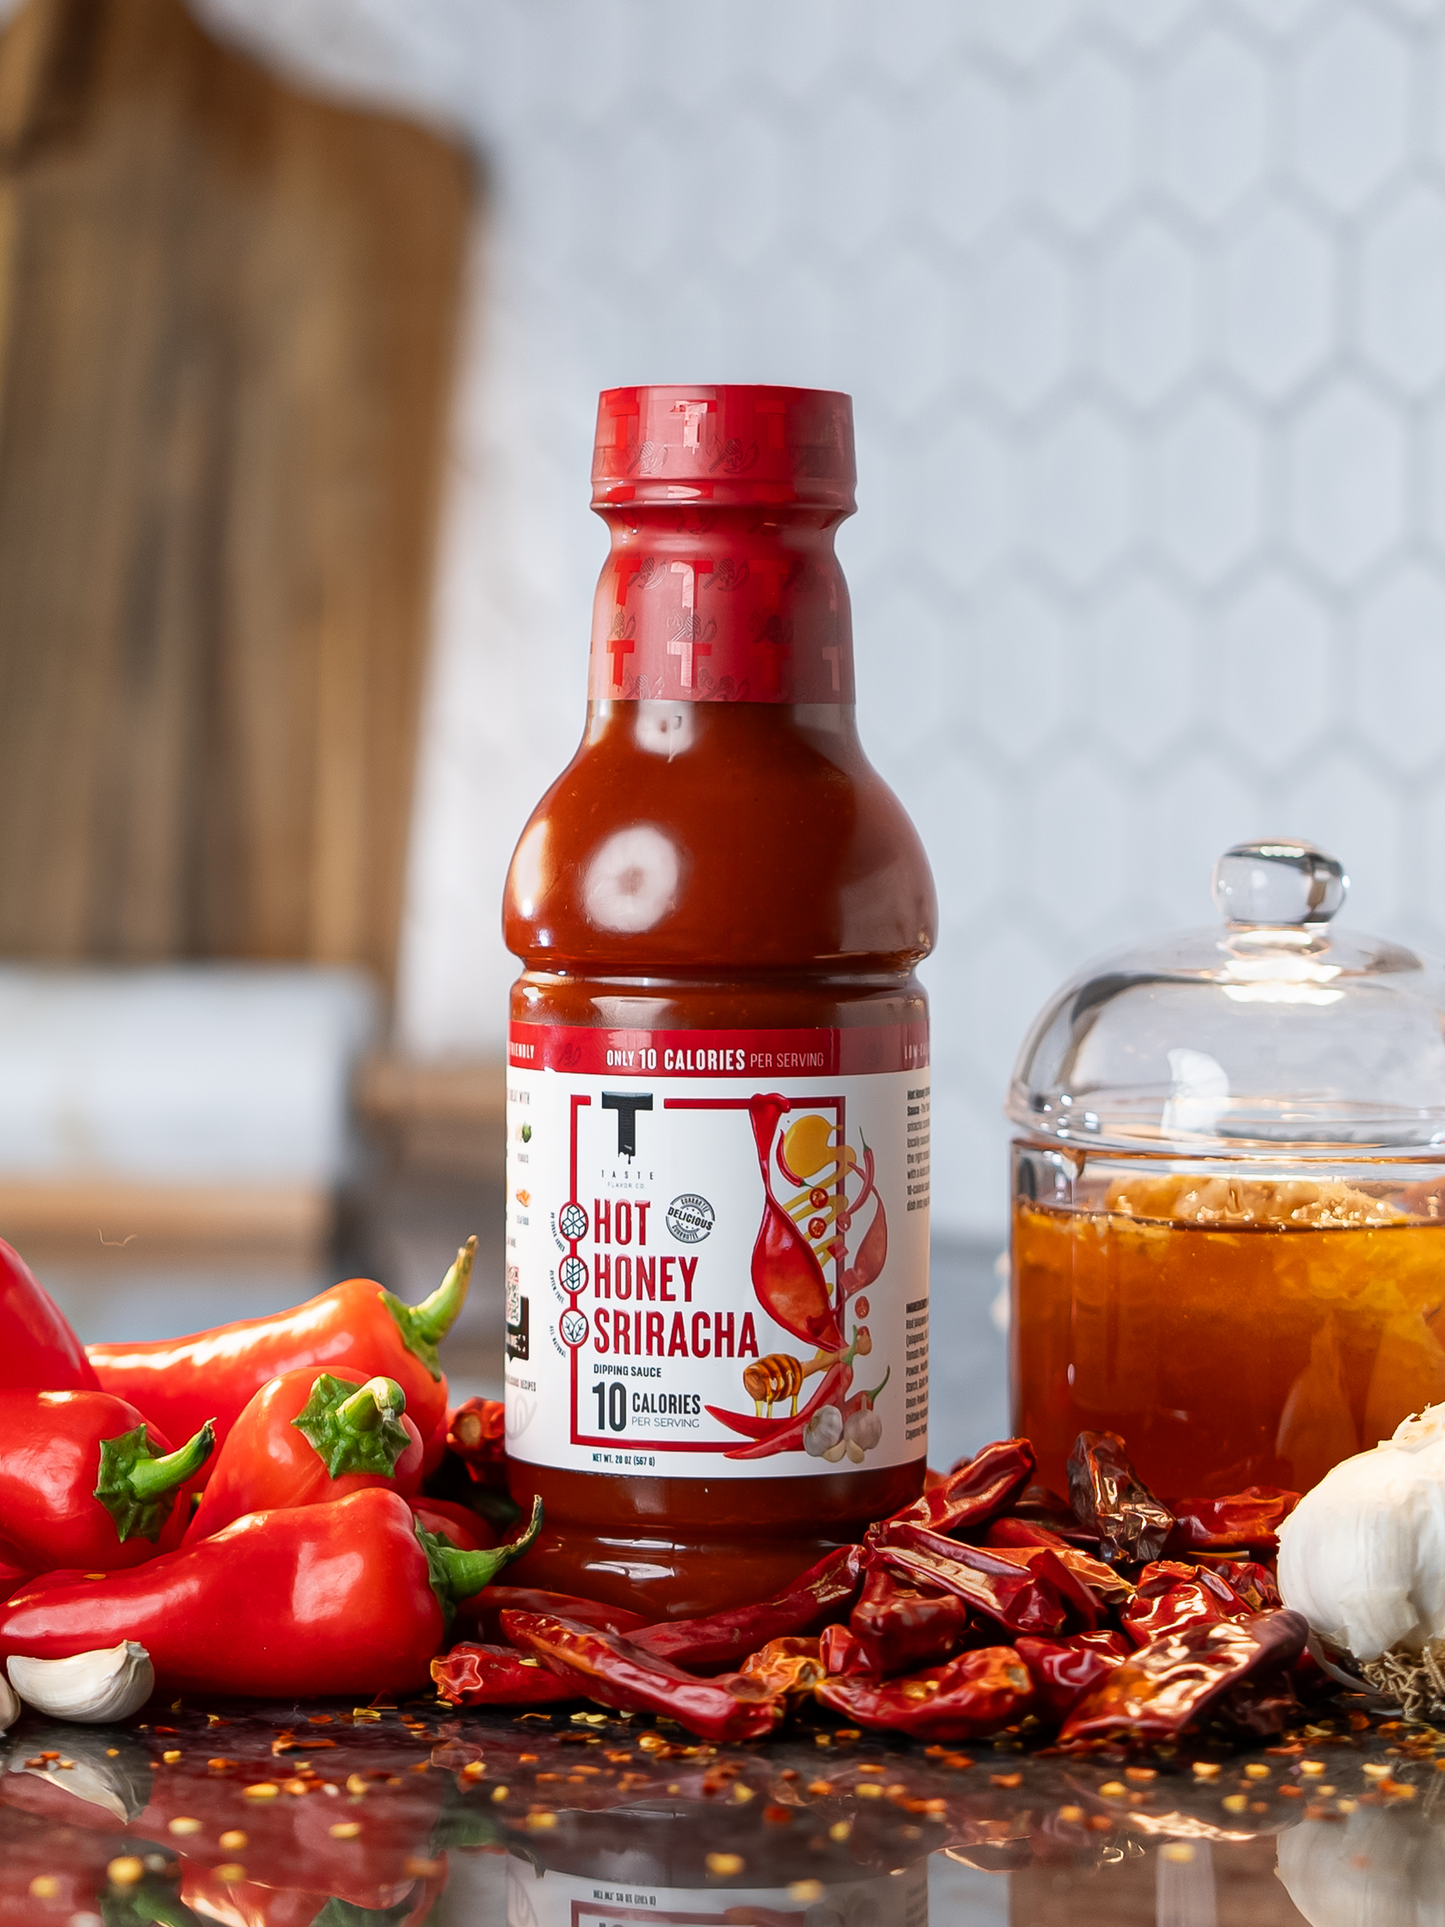 Hot Honey Sriracha